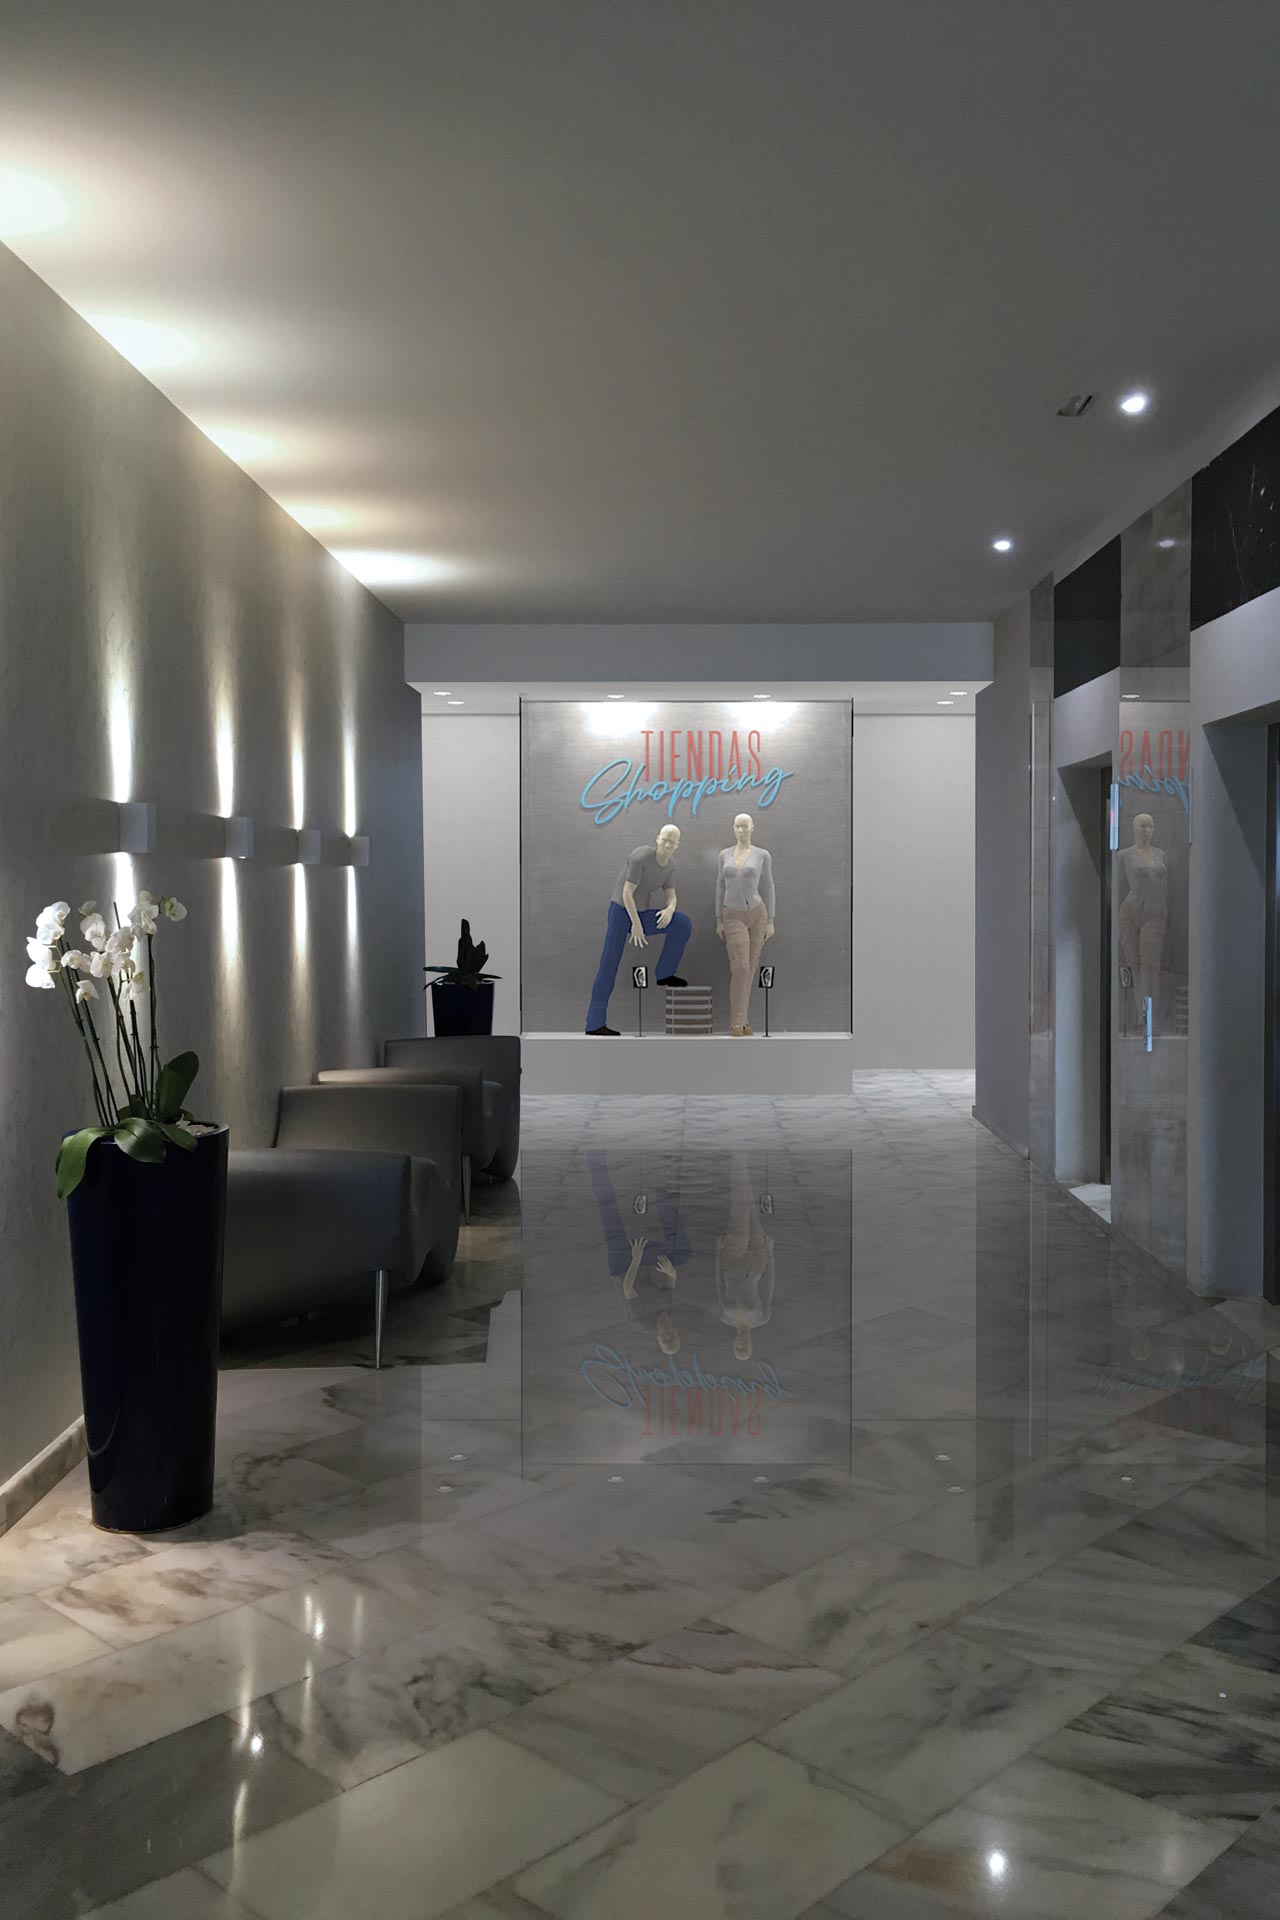 Señal identificativa del Hotel Hovima Costa Adeje para los espacios comunes destacados, realizada con LED tipo neón.